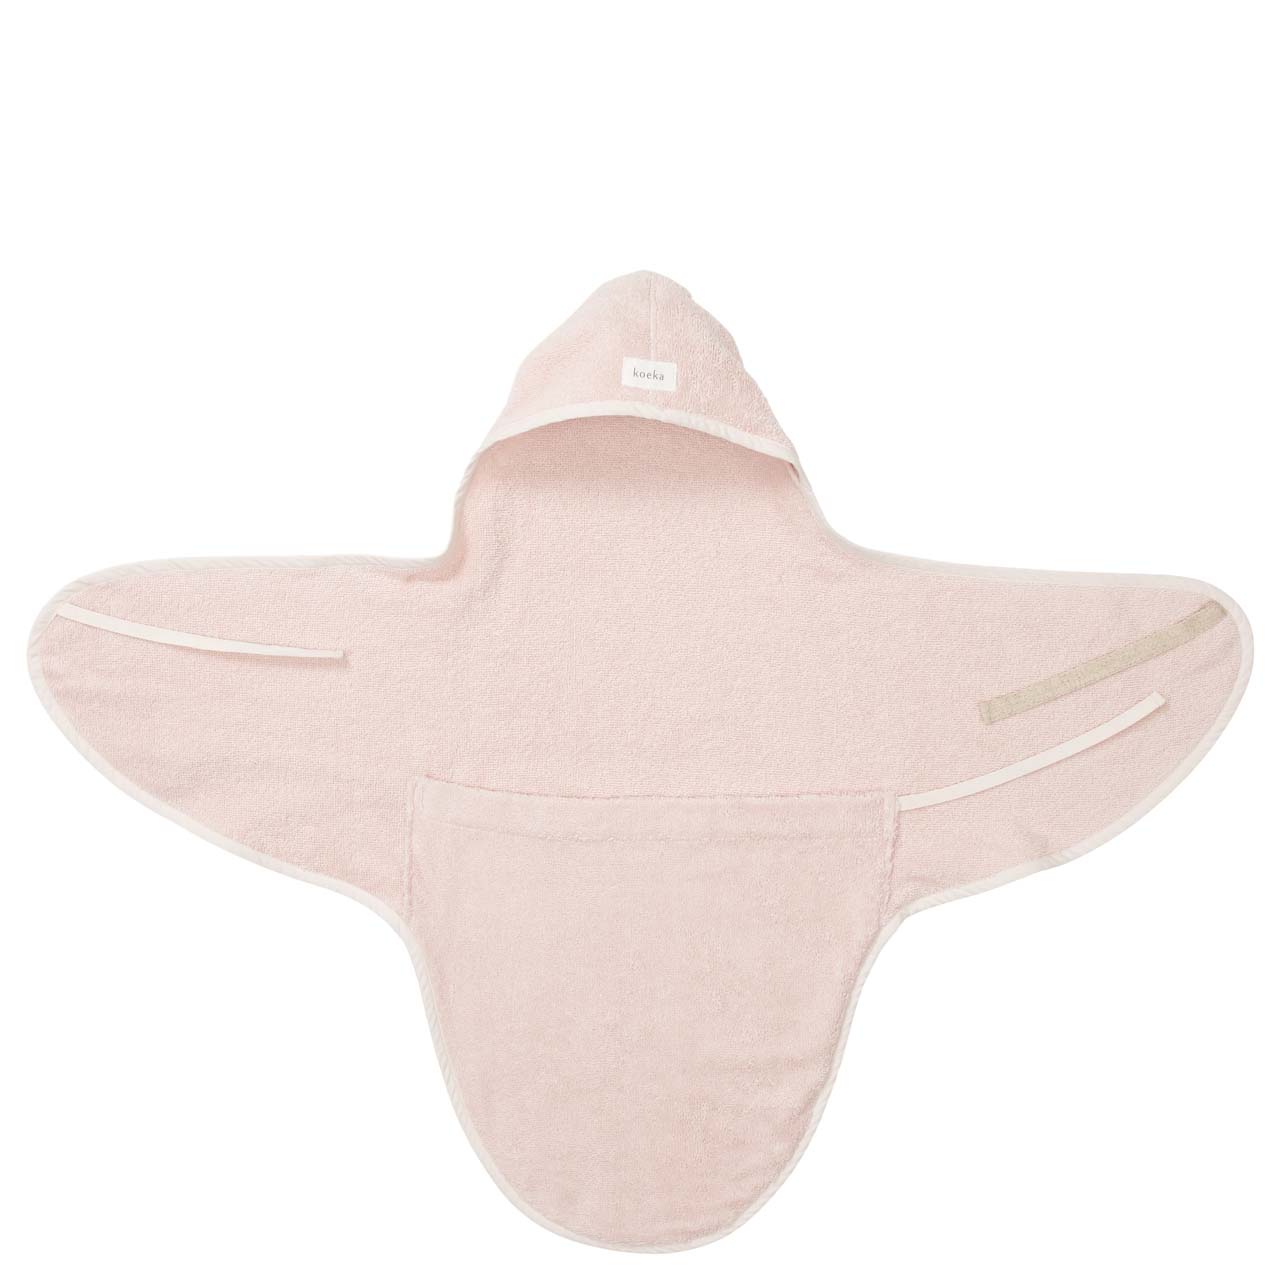 Umschlagtuch für Neugeborene Dijon Daily blush